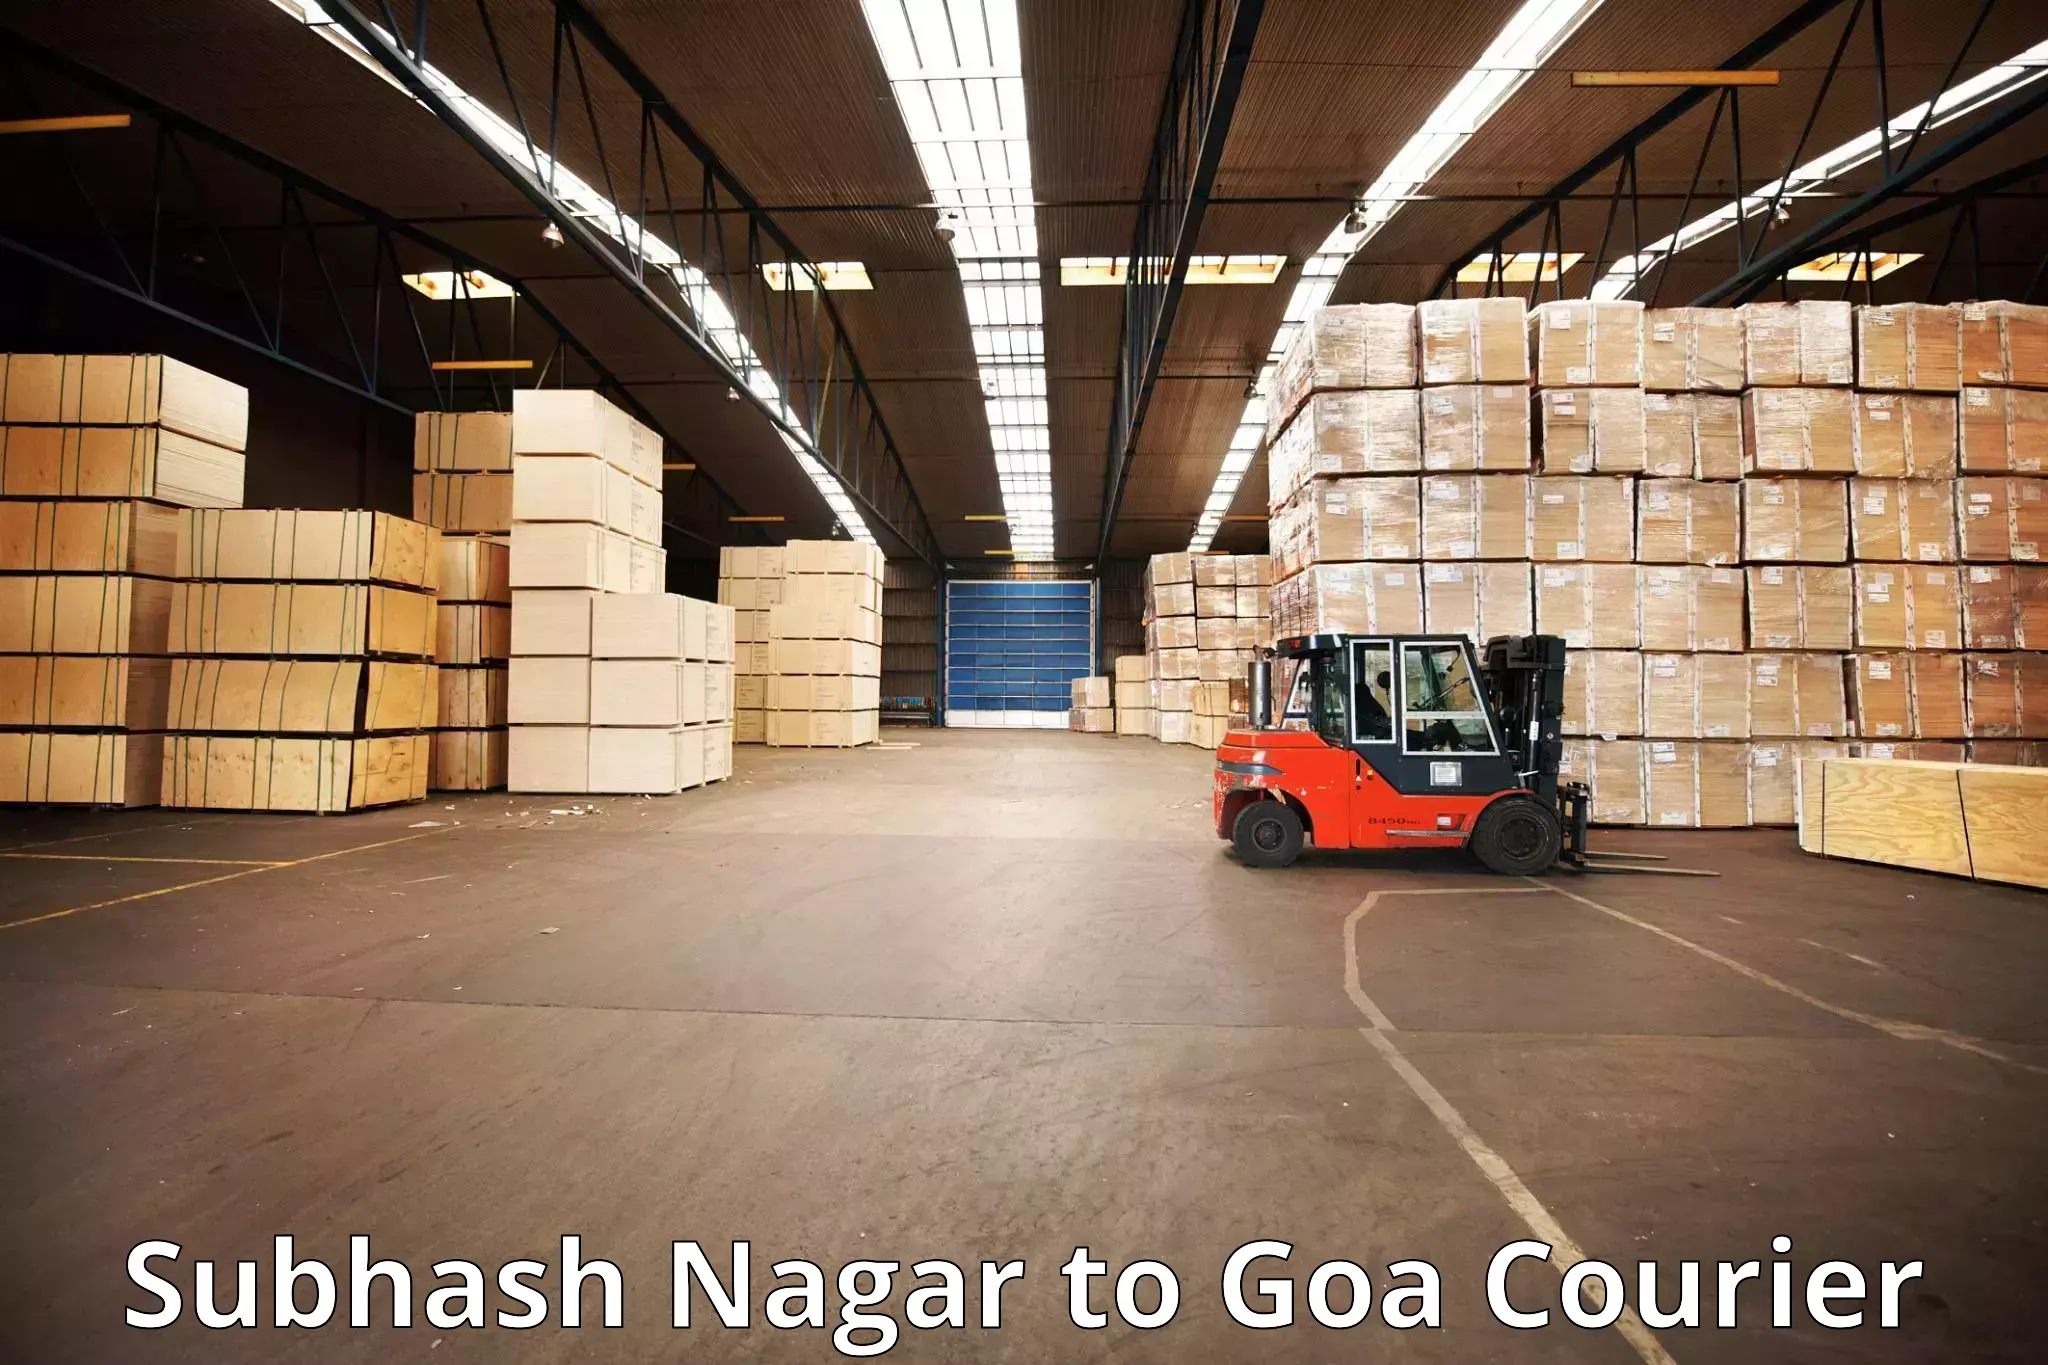 Luggage transport operations Subhash Nagar to Goa University